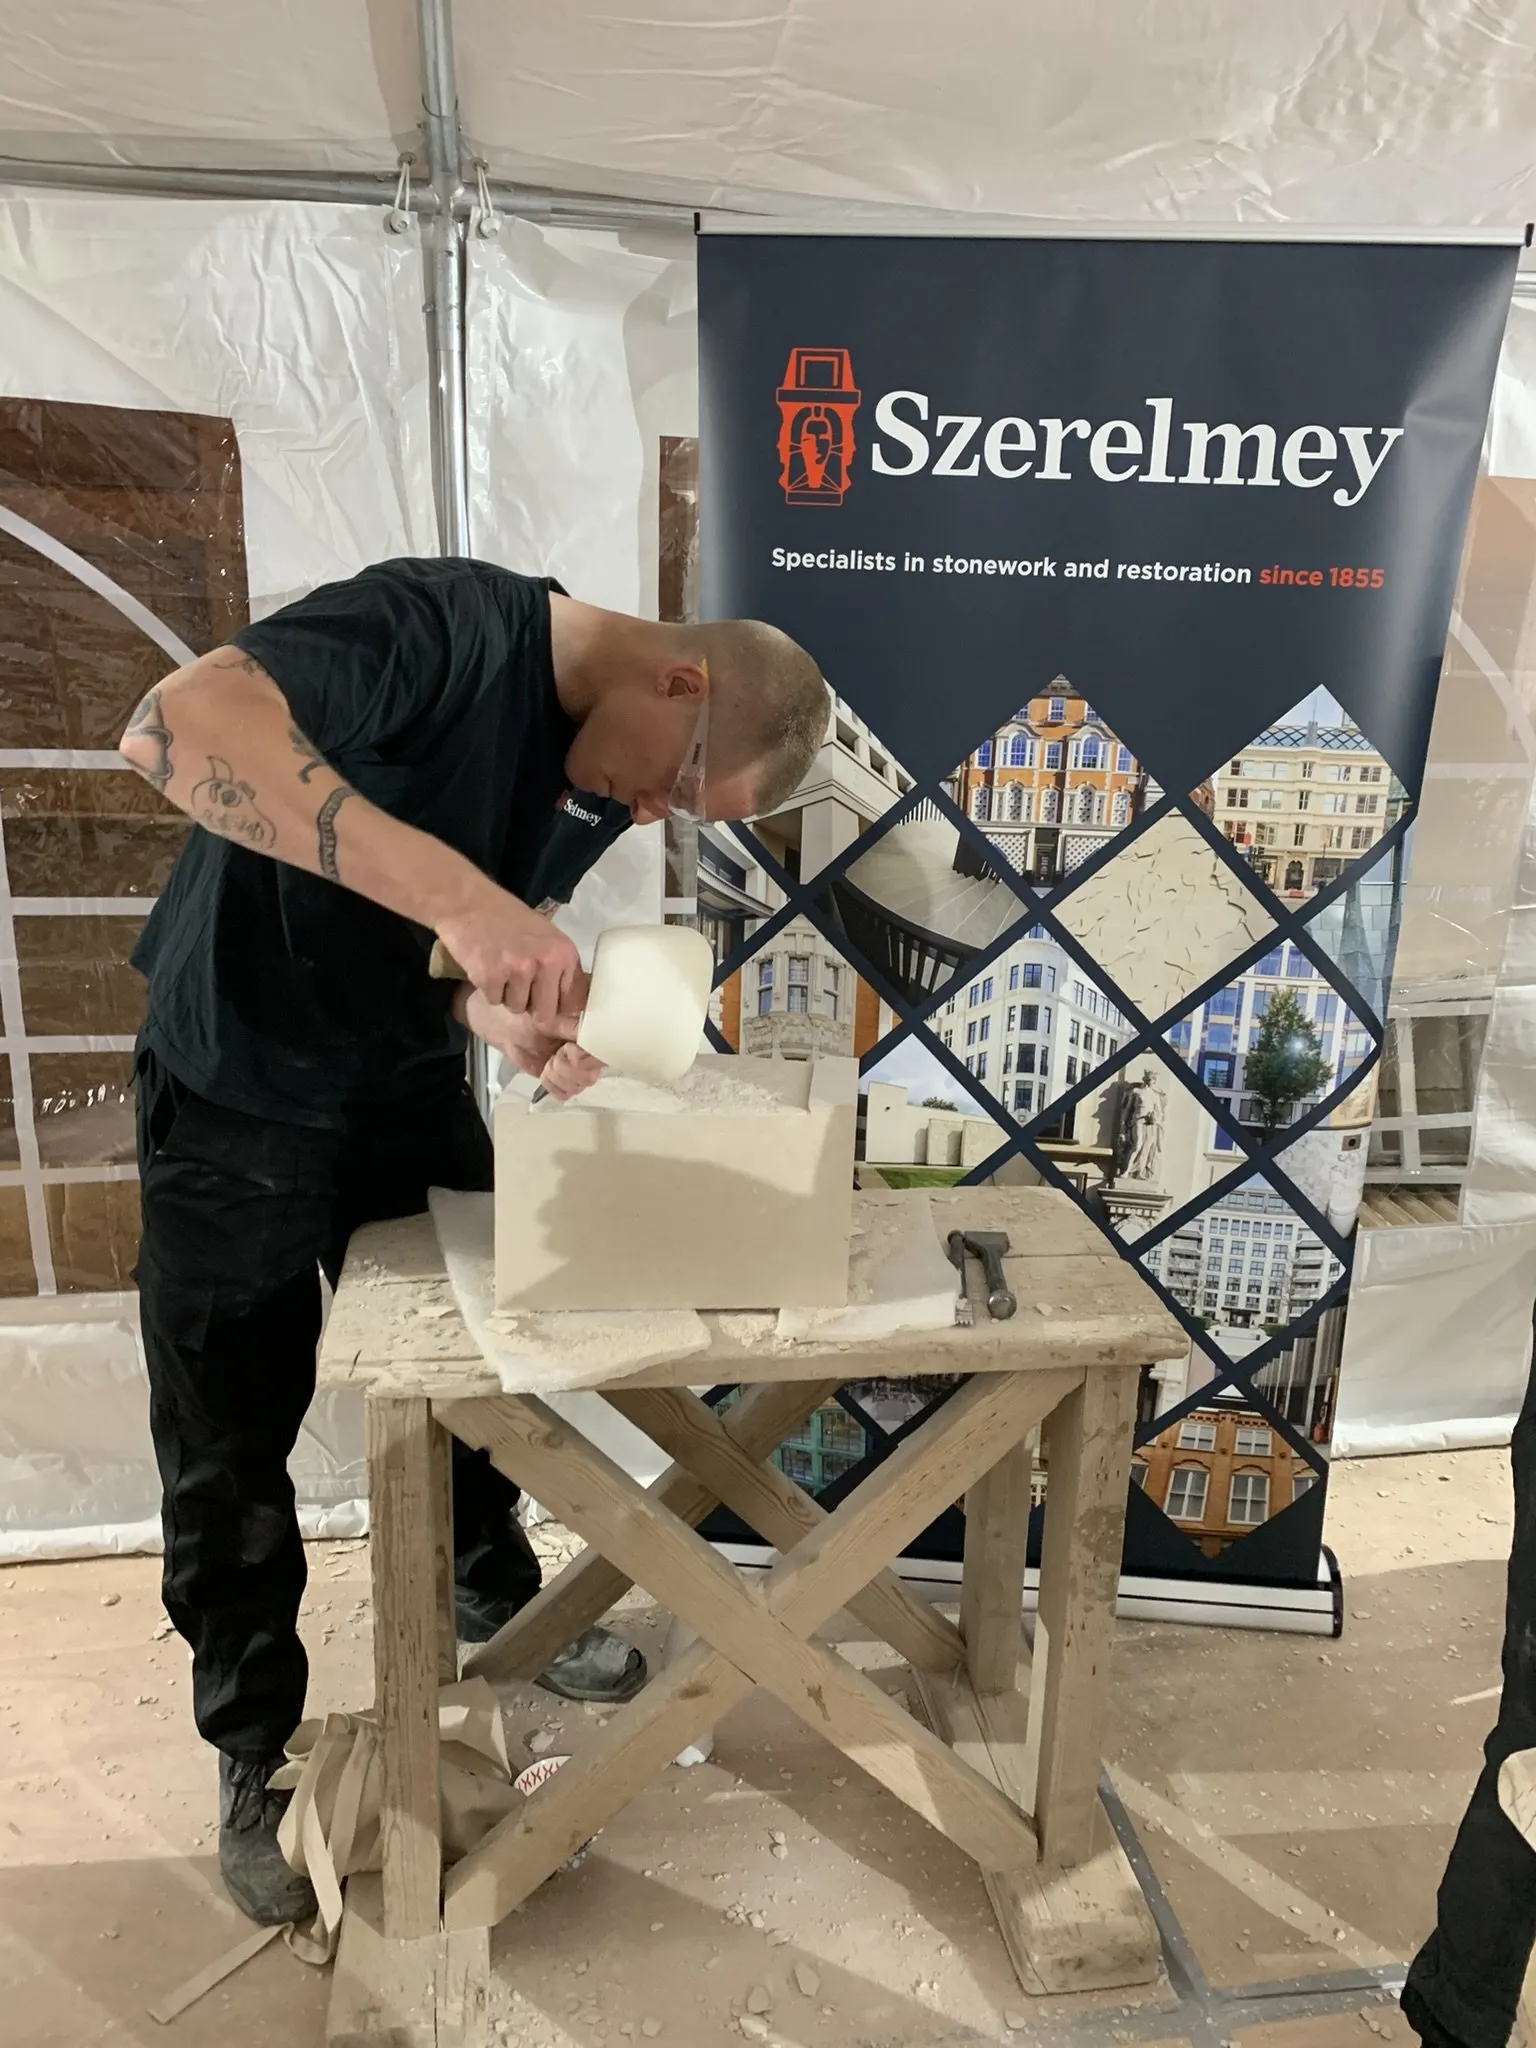 Szerelmey Apprentice Completes NVQ - Szerelmey